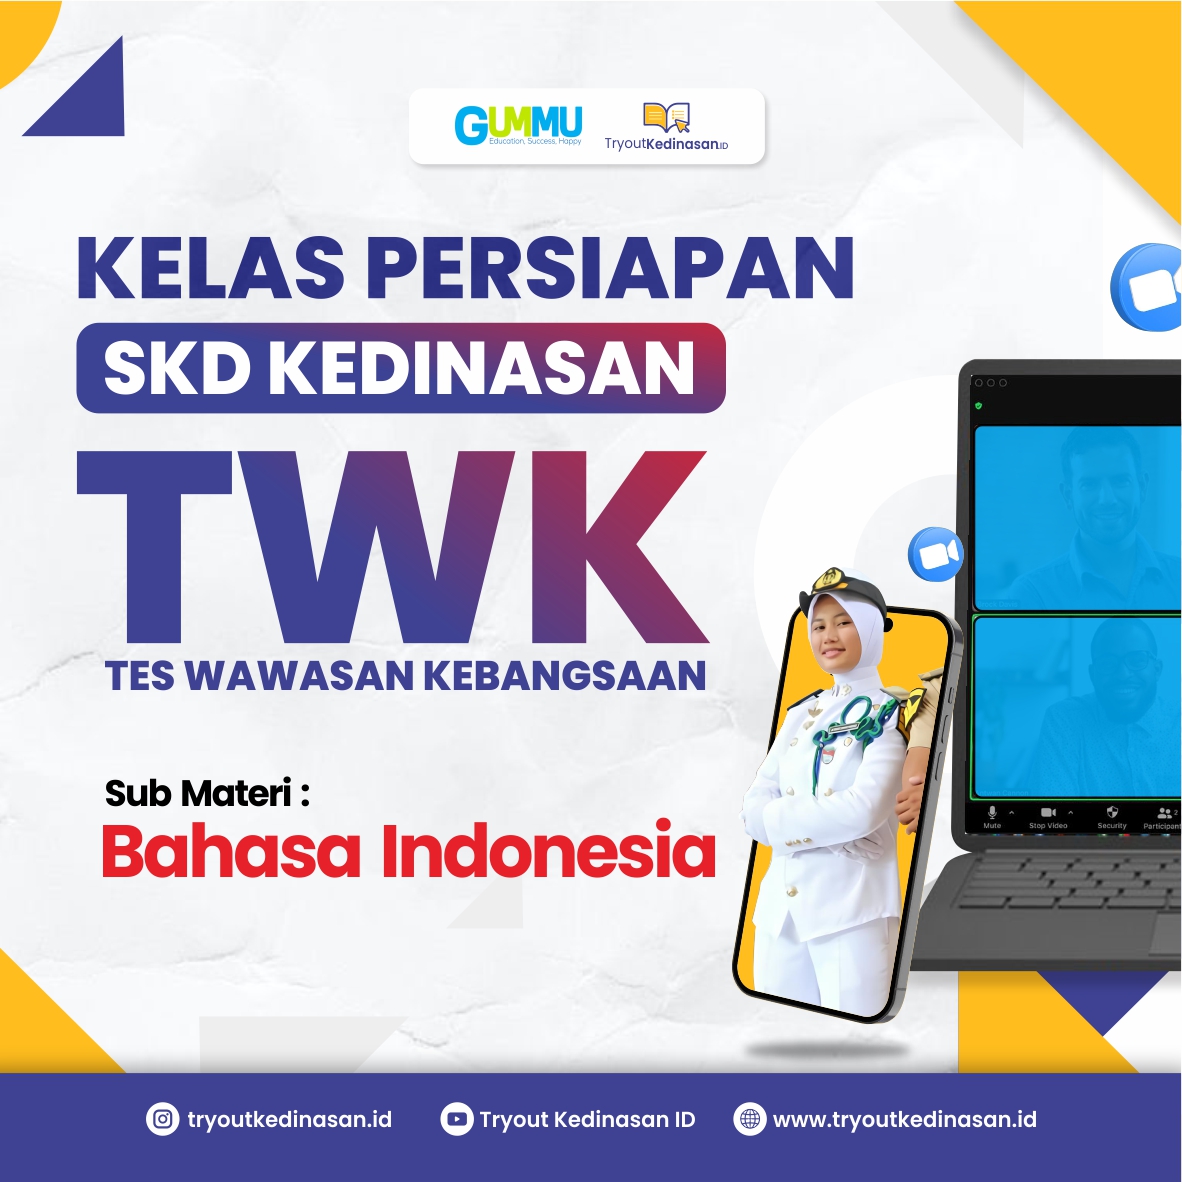 Kelas Persiapan TWK - B.Indonesia